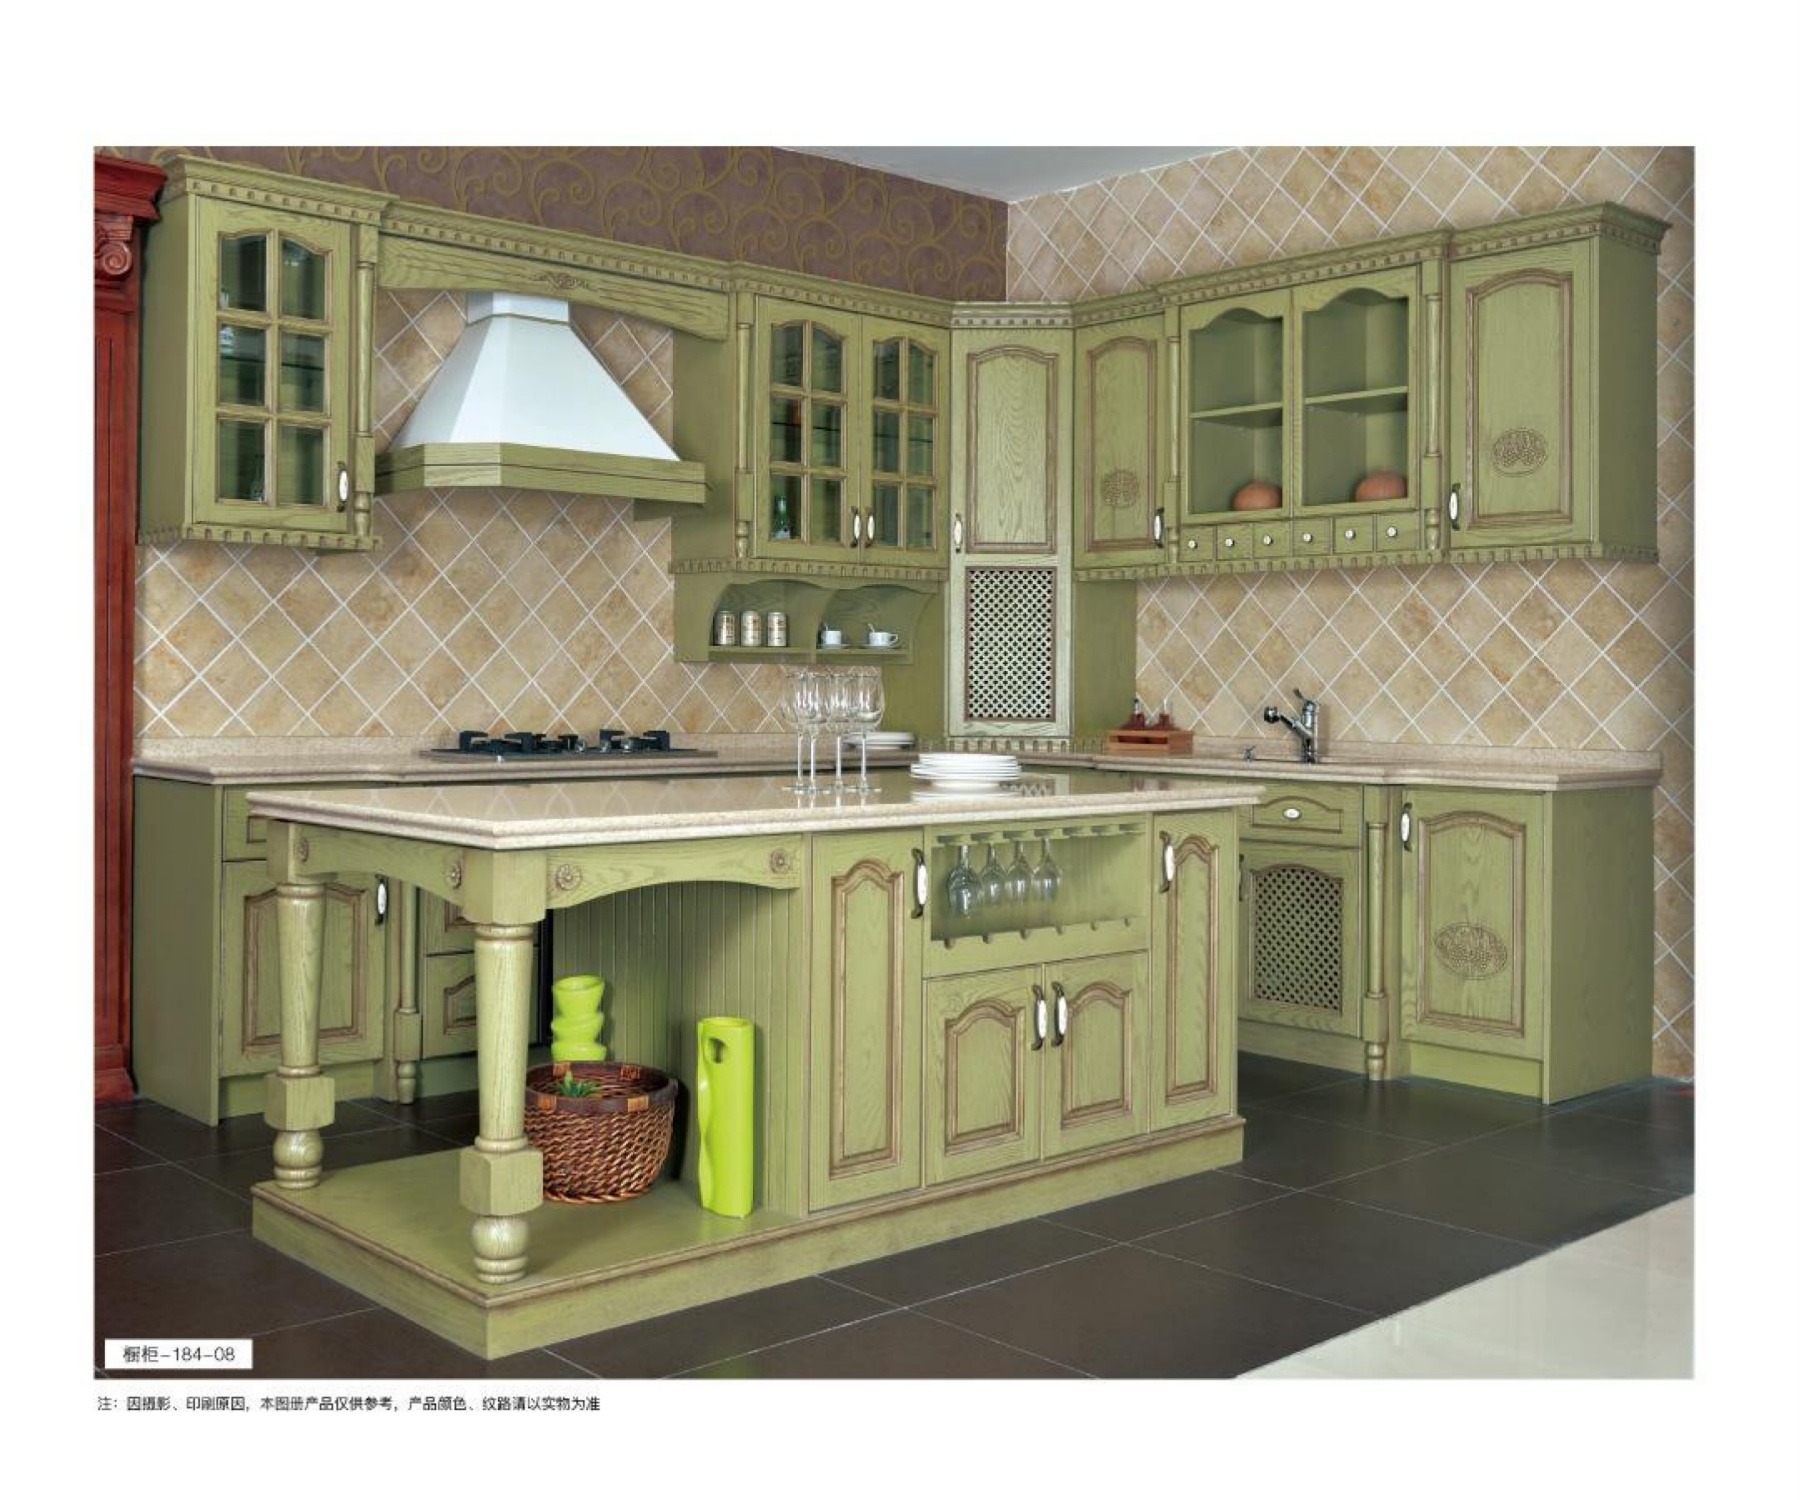 美国红橡实木欧式整体橱柜 定做开放式美式厨房装修厨柜 格兰伯爵全屋家具定制橱柜